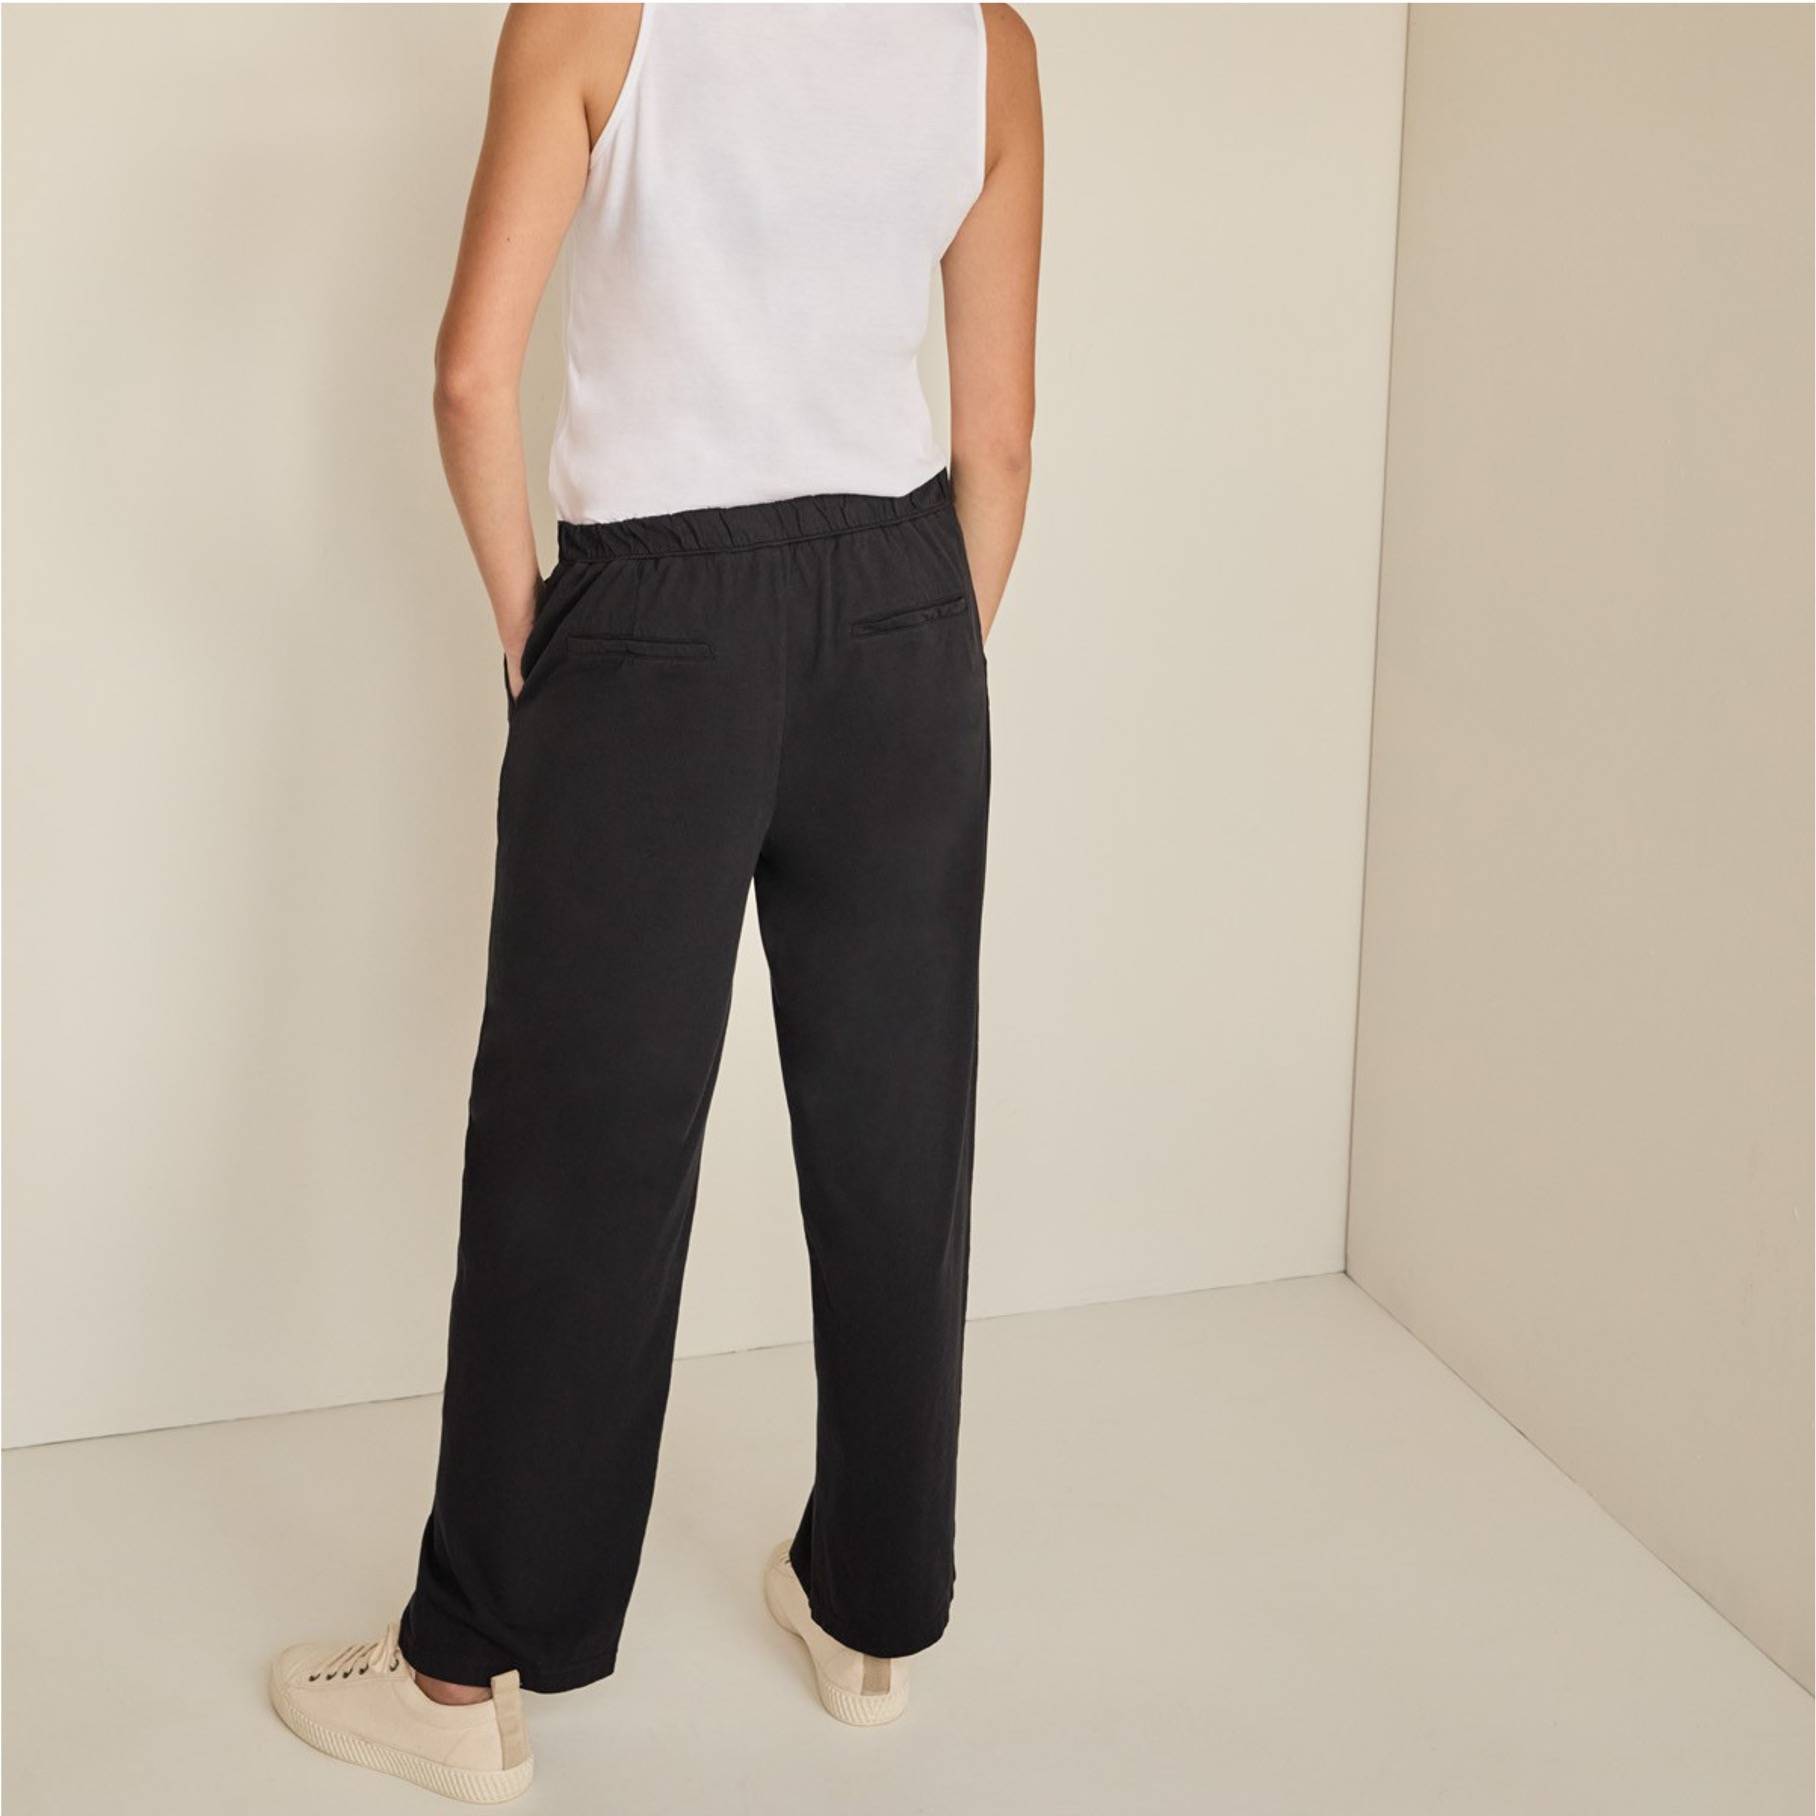 Pantalón de la marca Yerse modelo 36222 en color negro. Pantalón largo recto de punto cropped. Detalle de cintura elástica y bolsillos laterales. Su composición es 100% algodón.